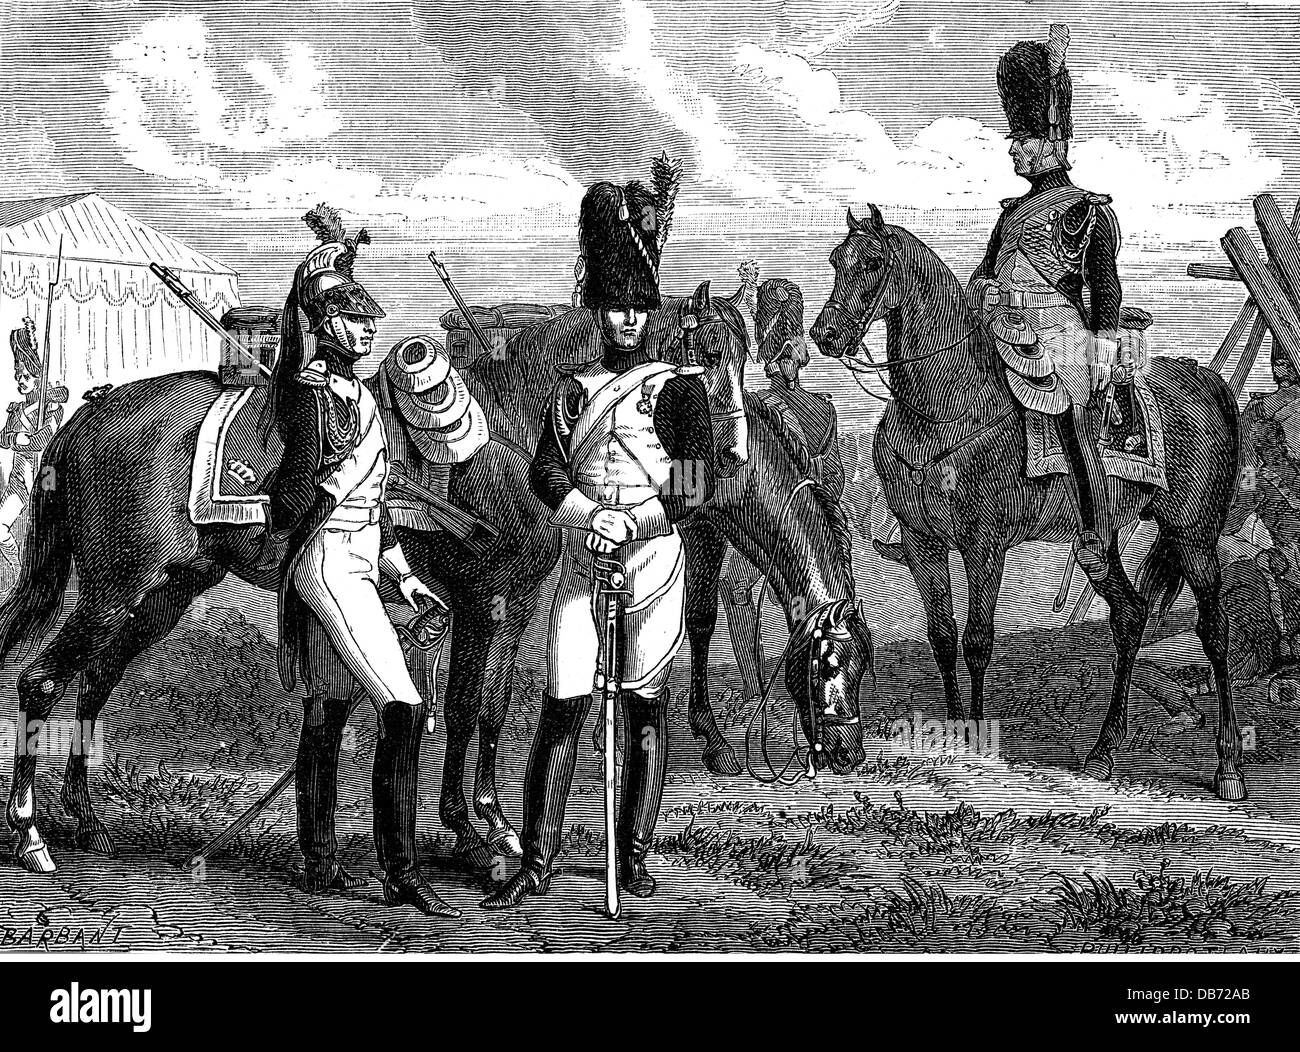 Militares, Francia, Guardia Imperial, dragones emperadores y granadas de caballo, alrededor de 1810, Derechos adicionales-Clearencias-no disponible Foto de stock